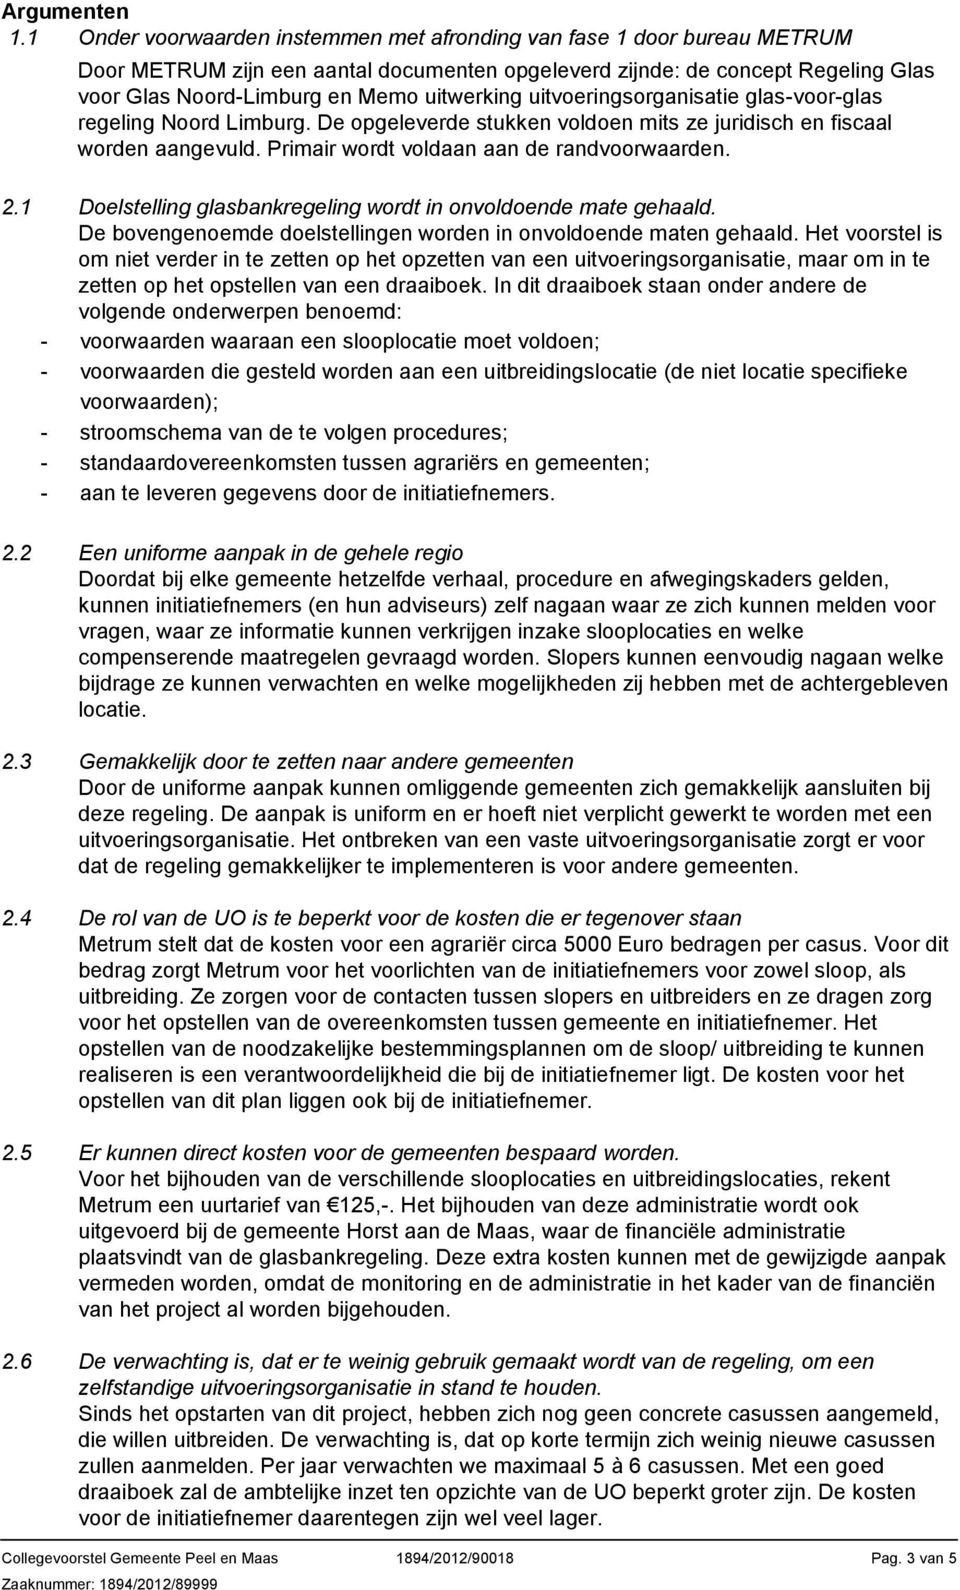 uitvoeringsorganisatie glas-voor-glas regeling Noord Limburg. De opgeleverde stukken voldoen mits ze juridisch en fiscaal worden aangevuld. Primair wordt voldaan aan de randvoorwaarden. 2.